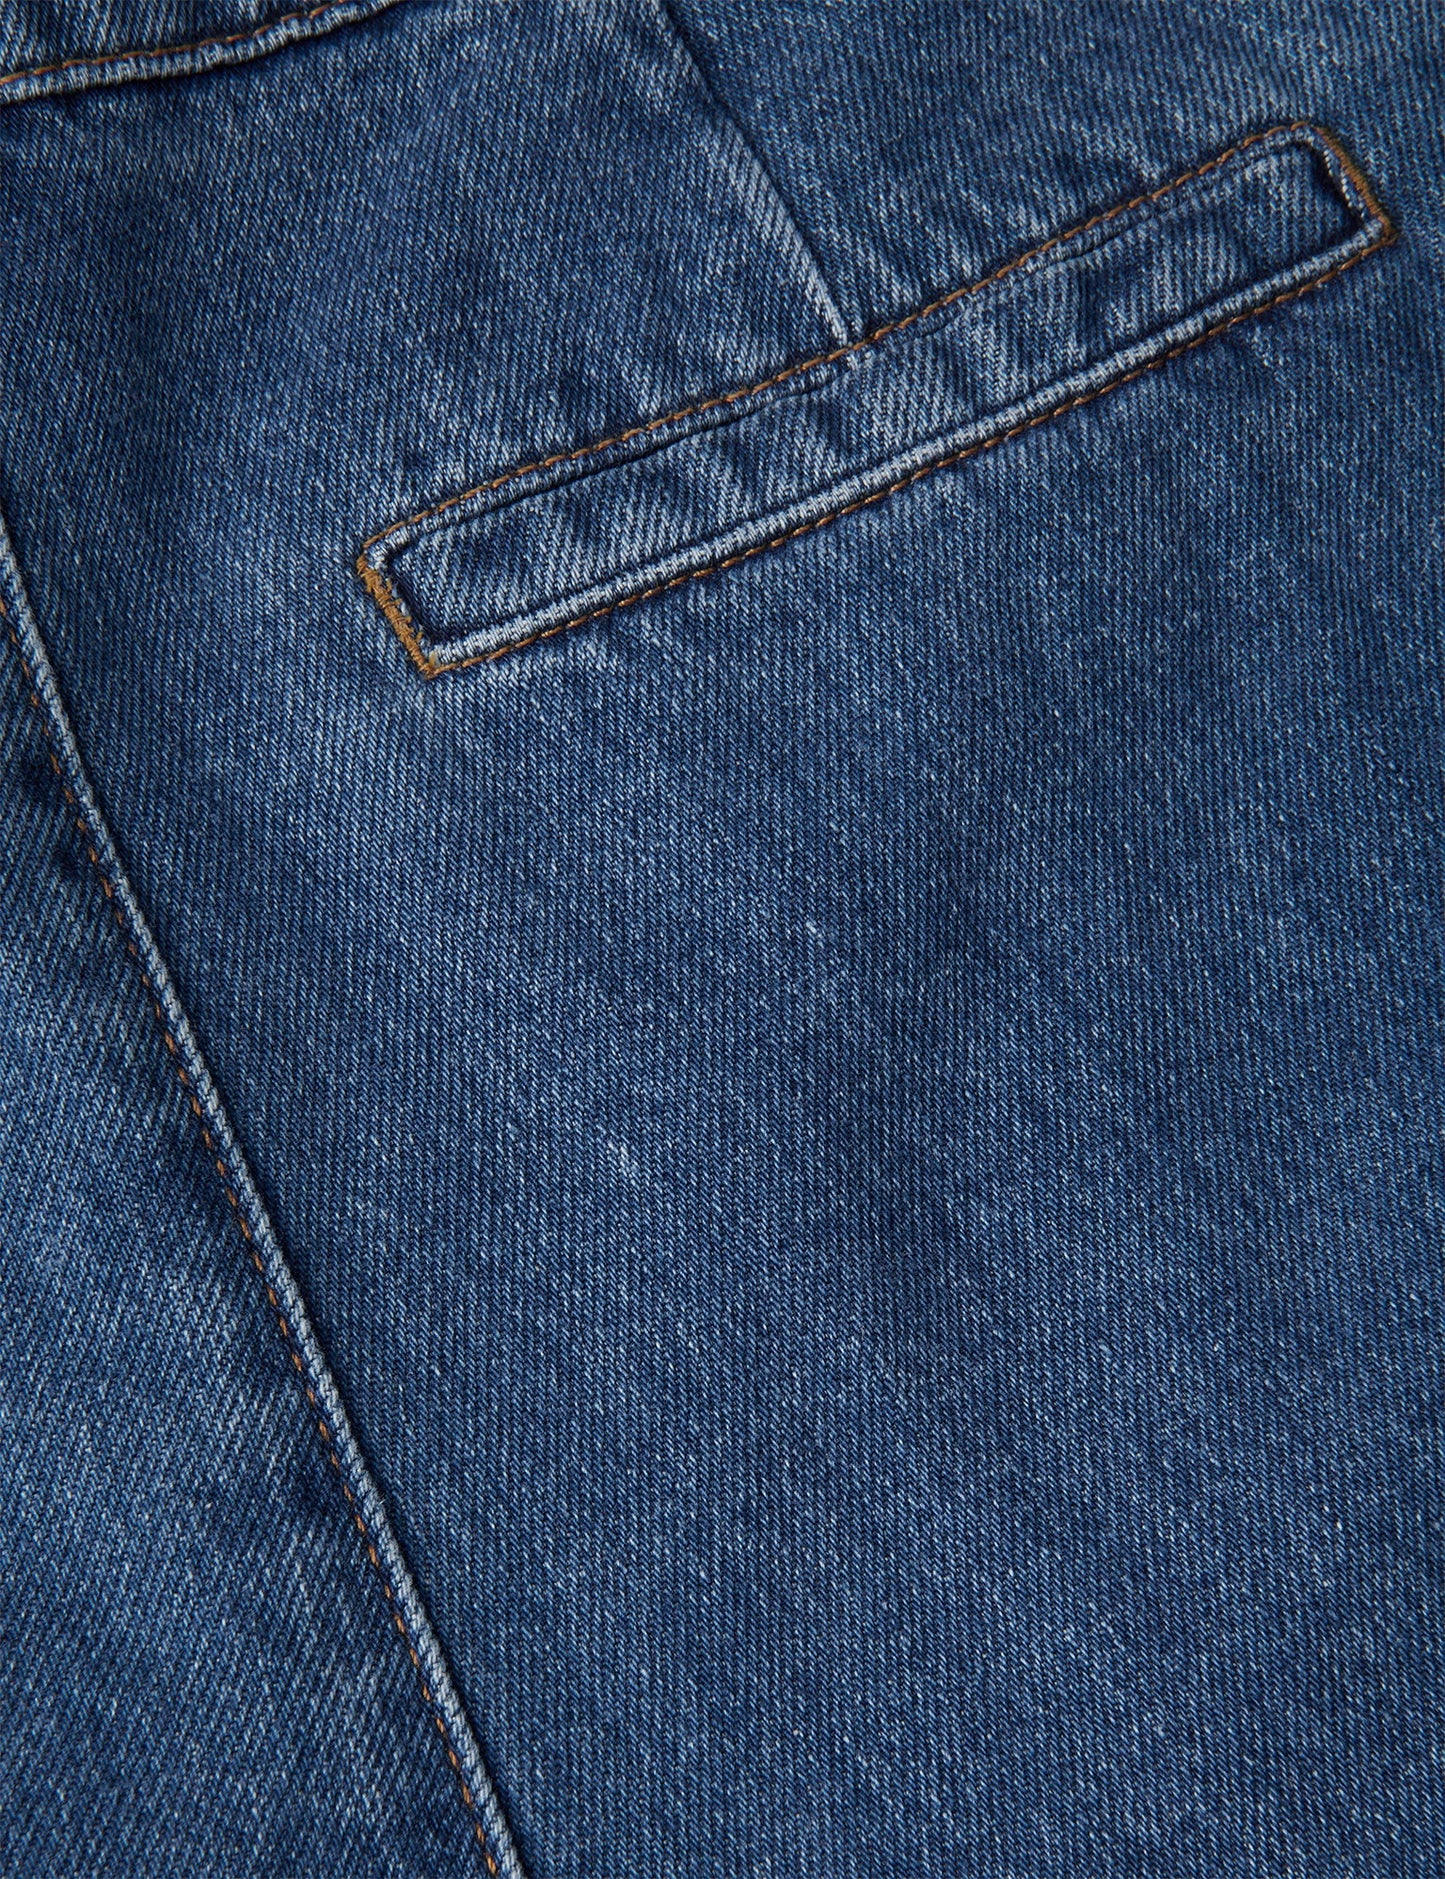 Denim Paria Jeans,  Vintage Blue